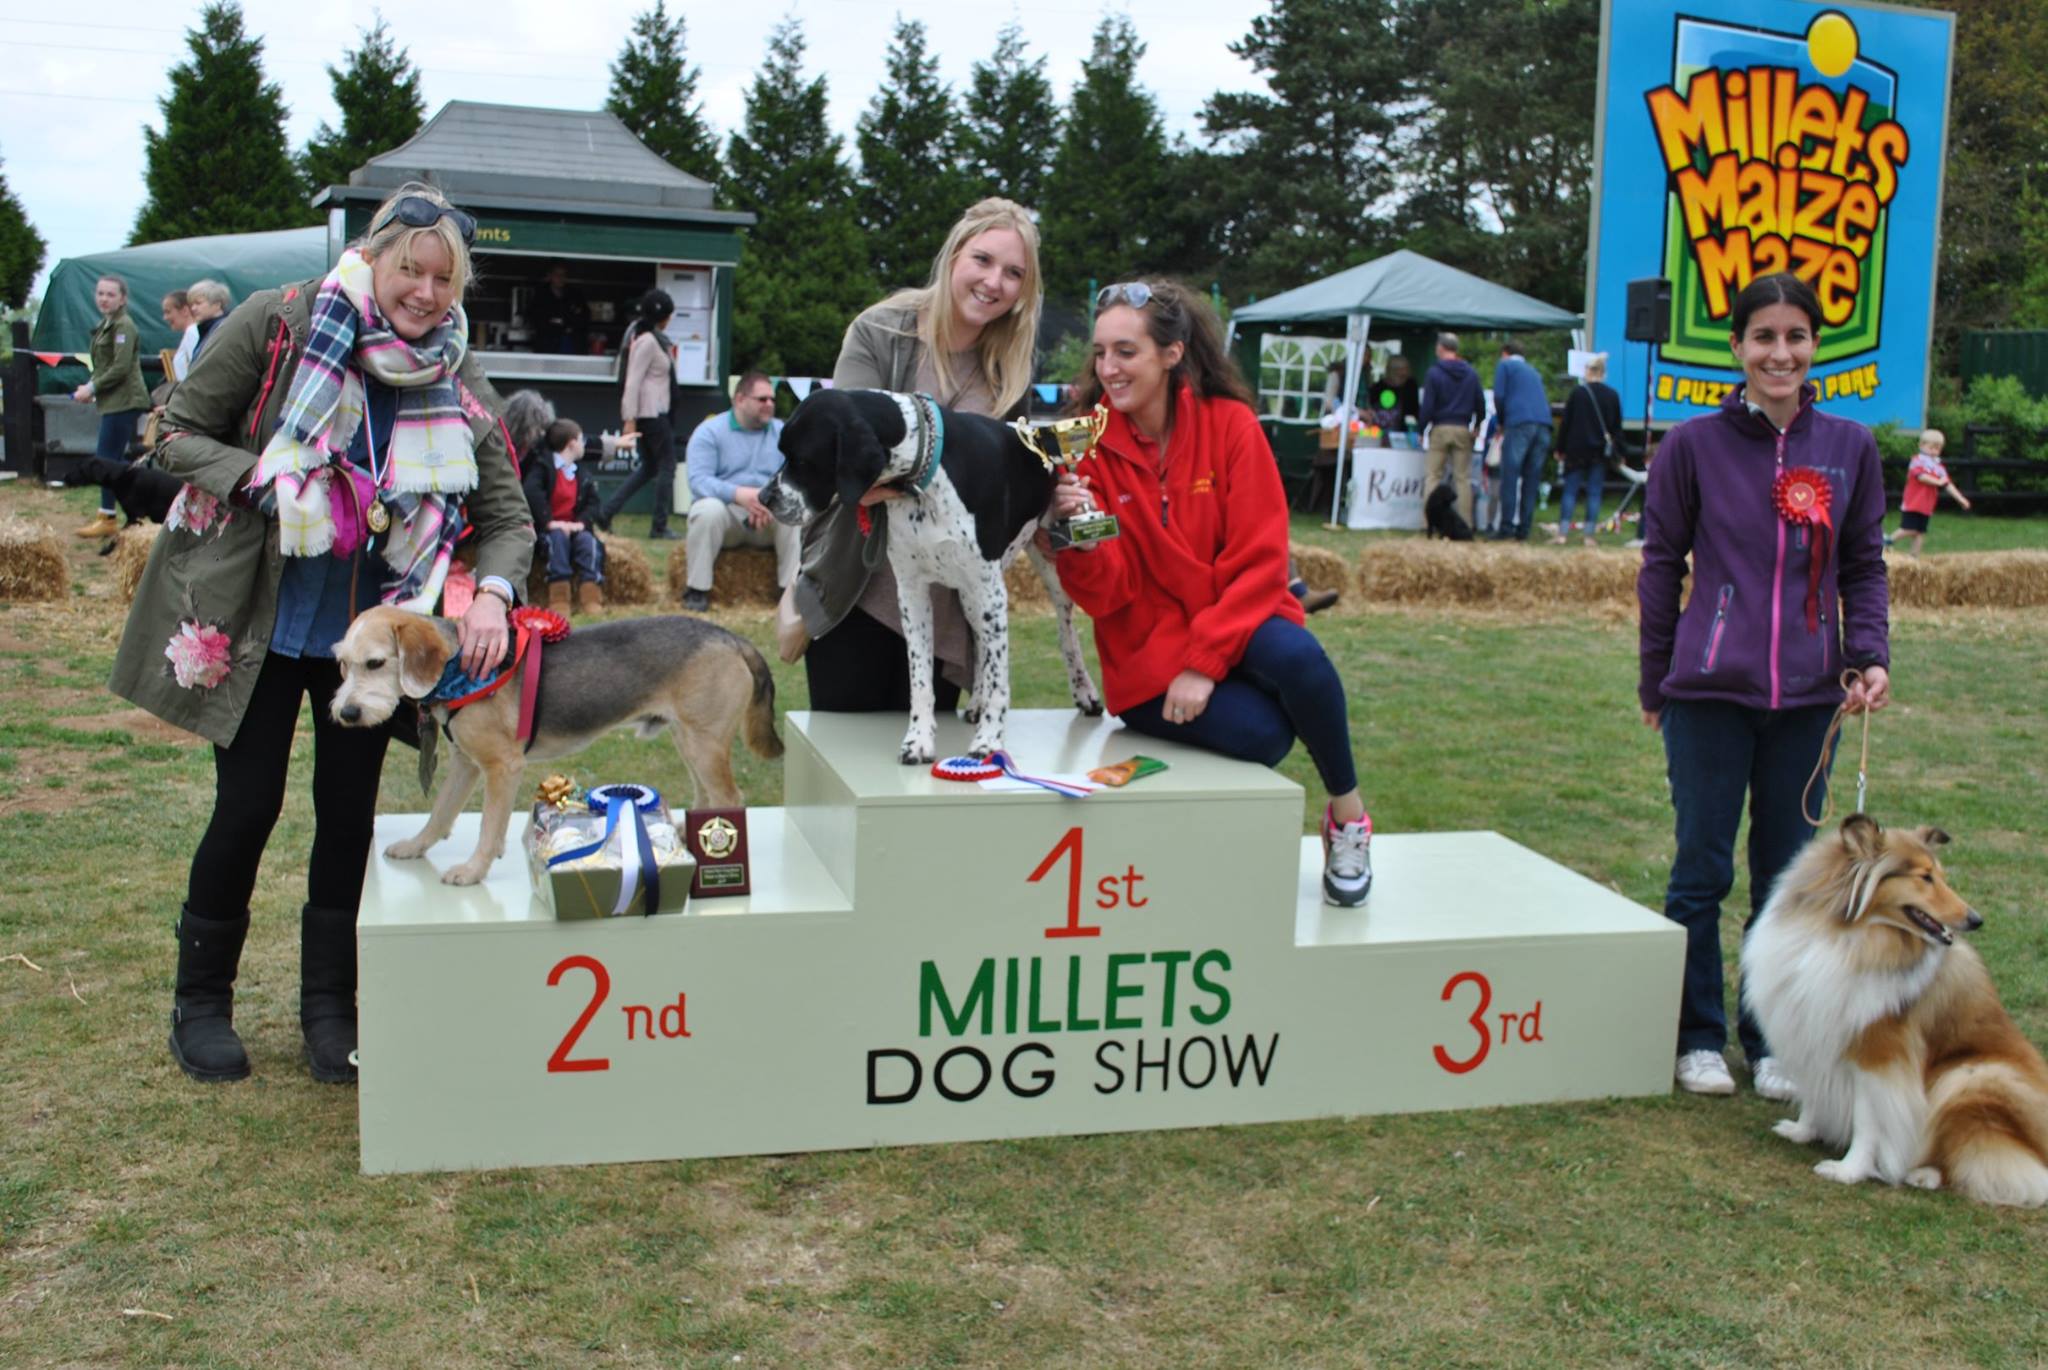 Millets dog show